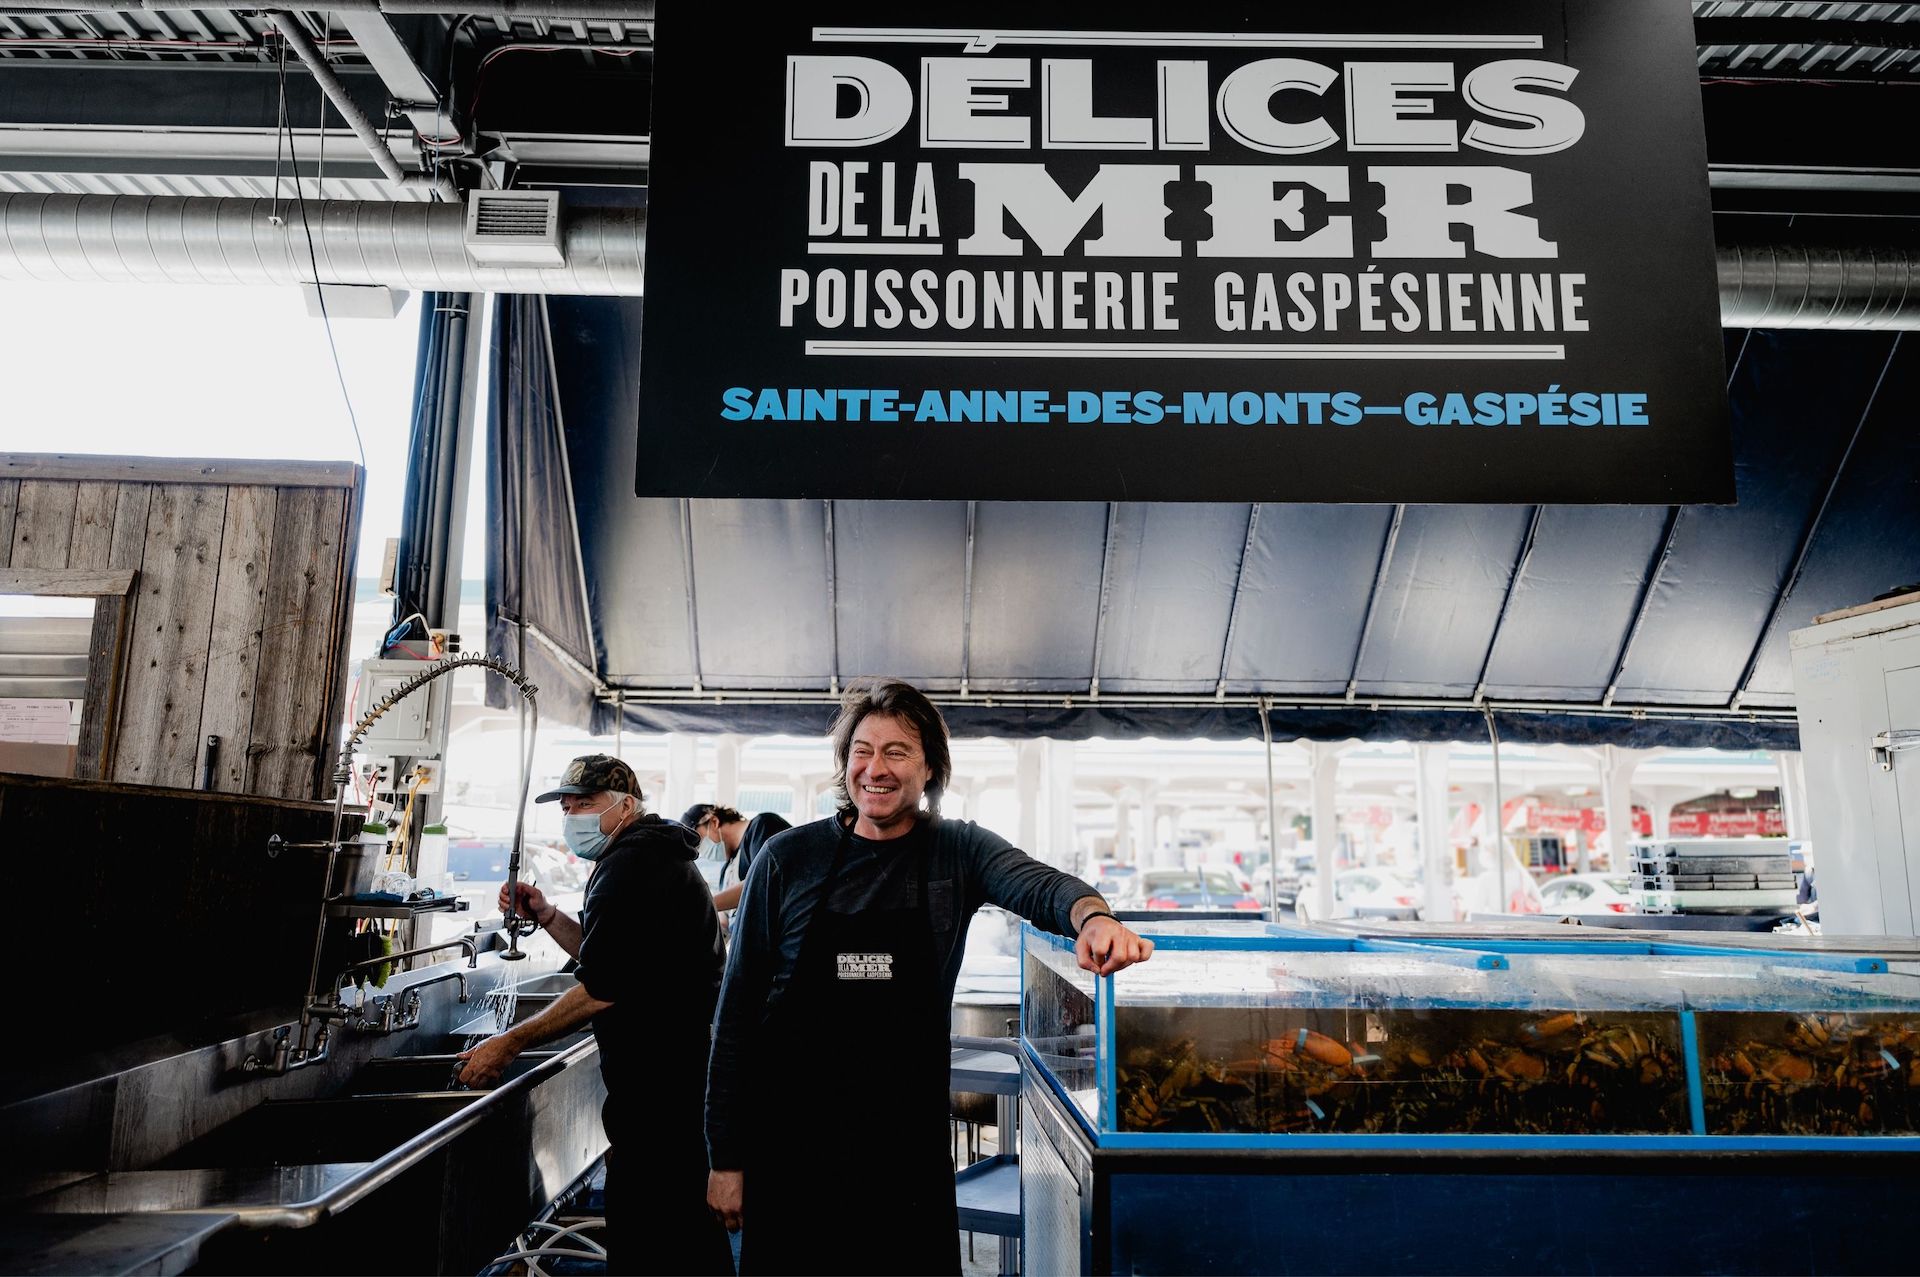 Les Délices de la Mer:  A Delightful Fish Tale from the Gaspé Peninsula